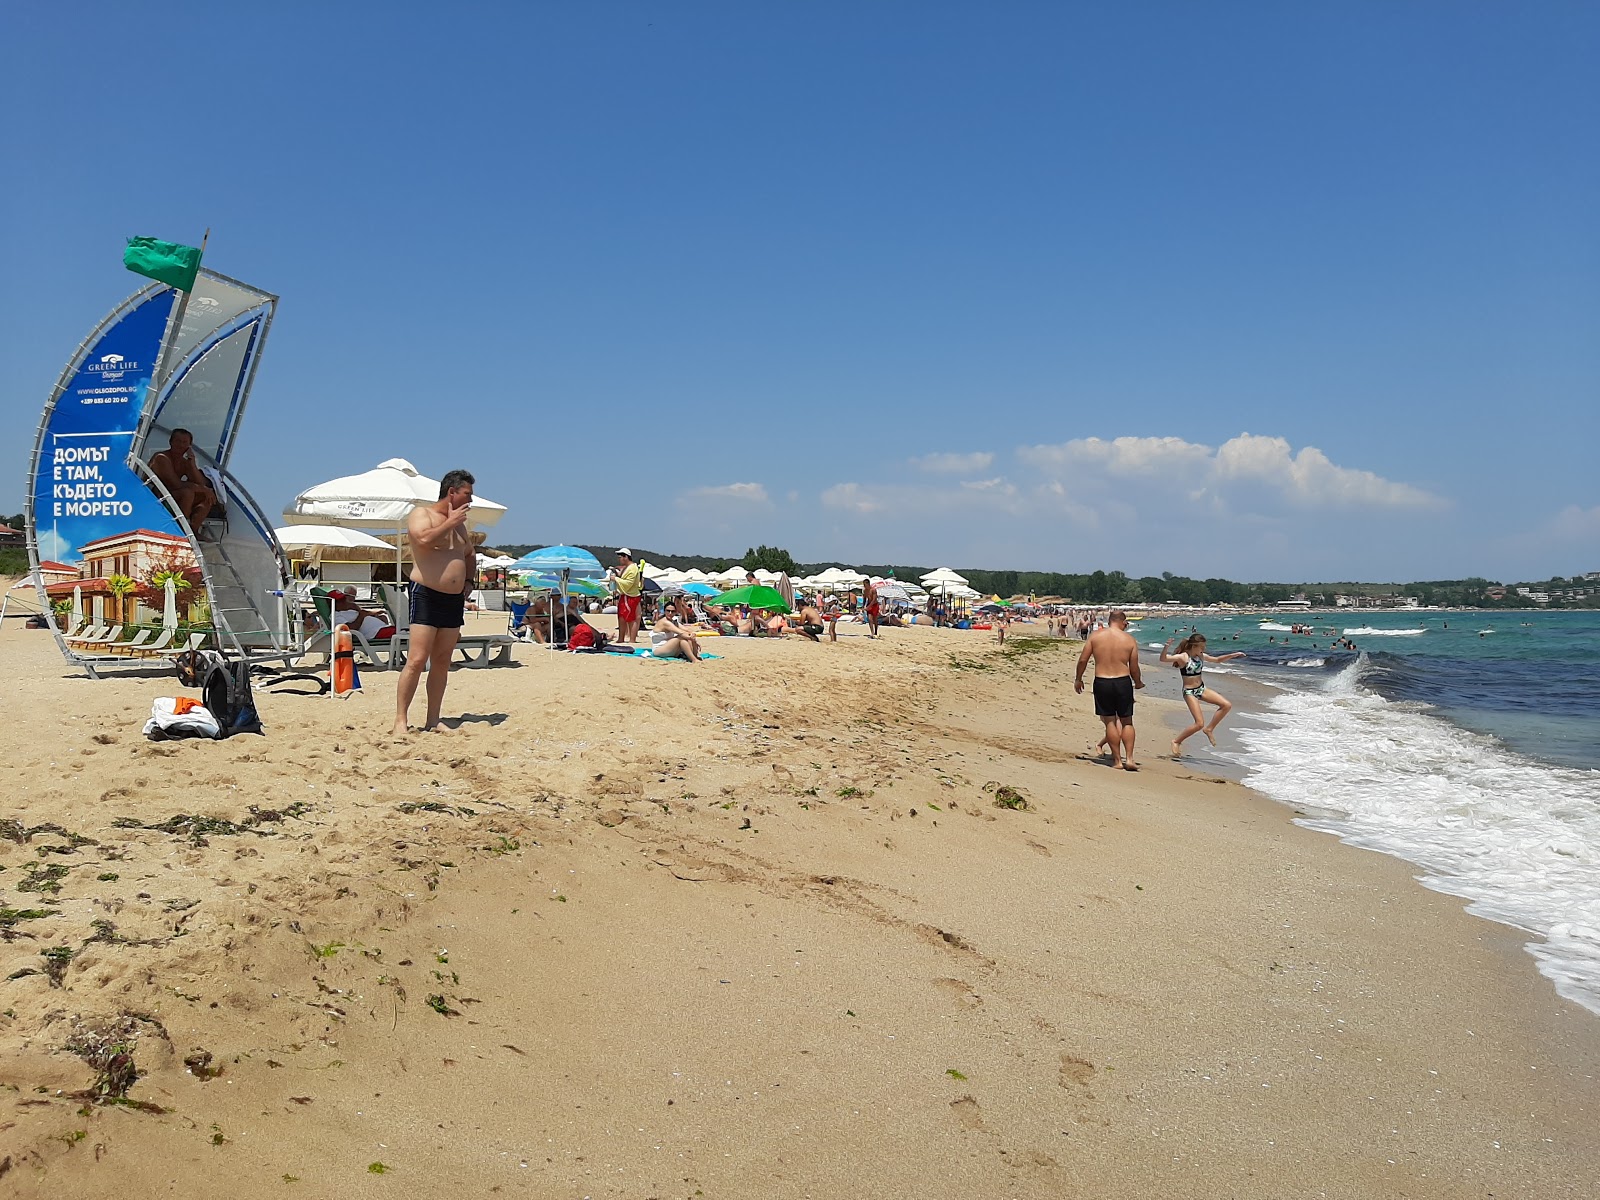 Foto af Smokinya beach - populært sted blandt afslapningskendere